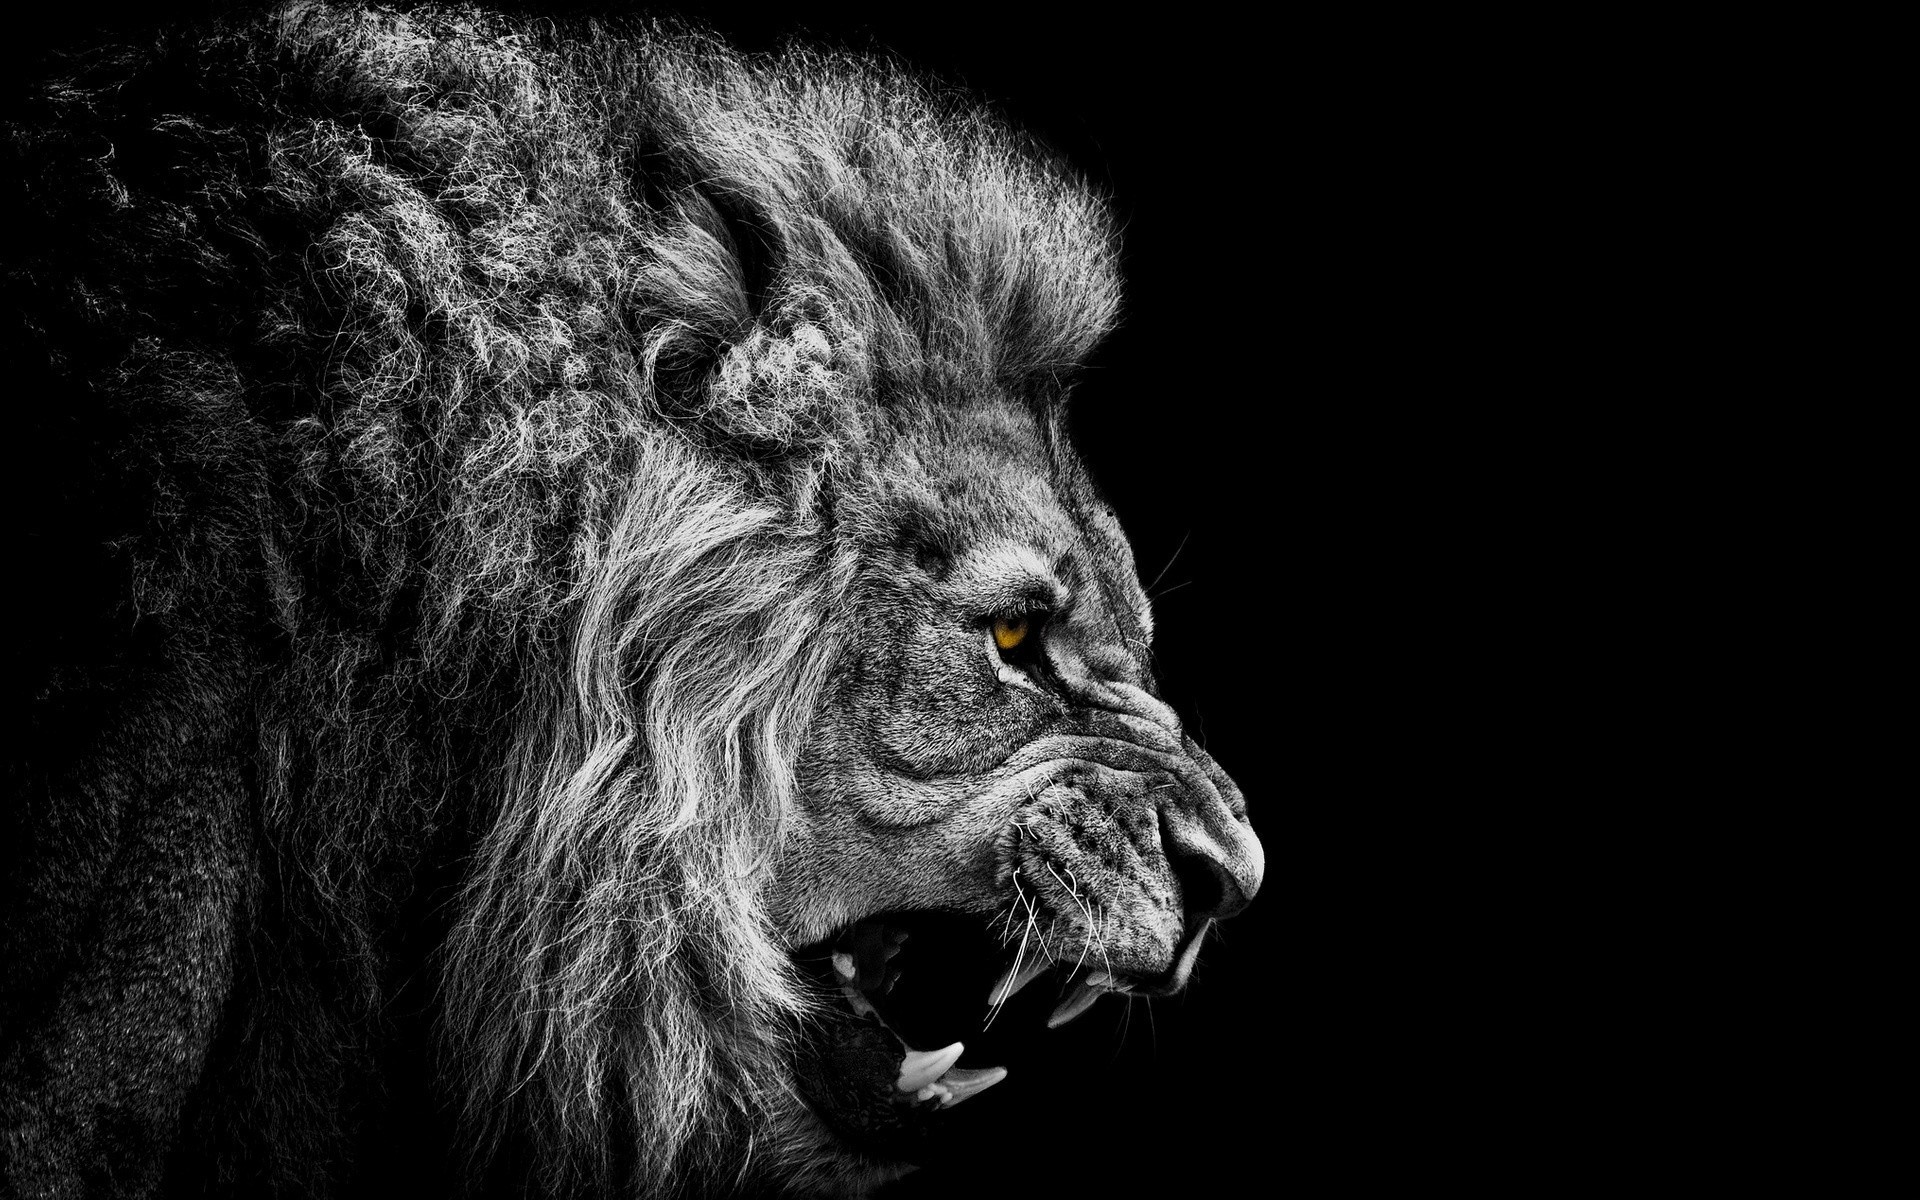 Epic lion roar [wallpapers